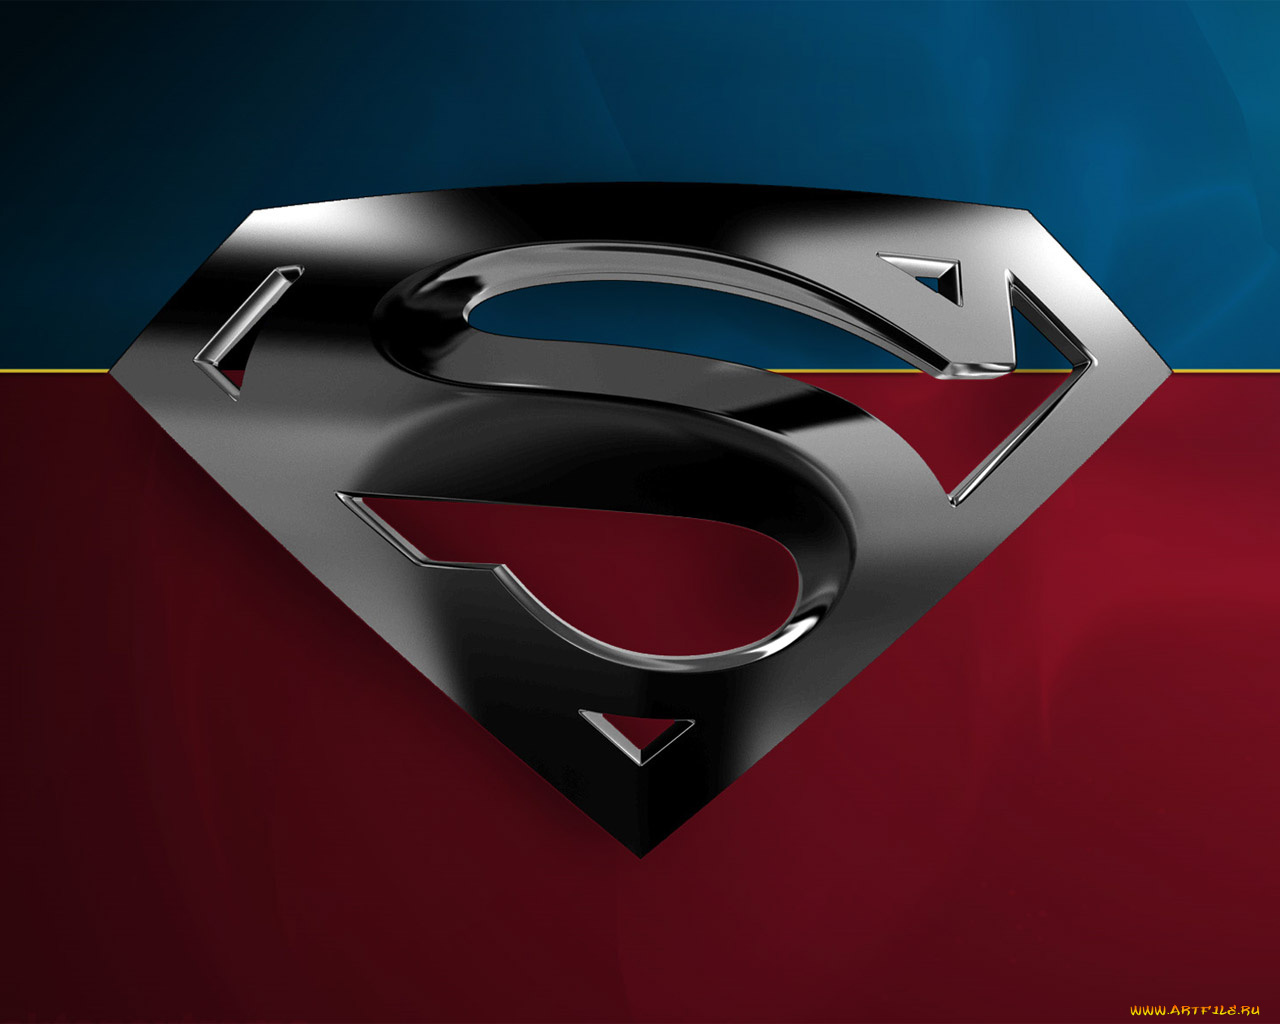 superman, returns, кино, фильмы